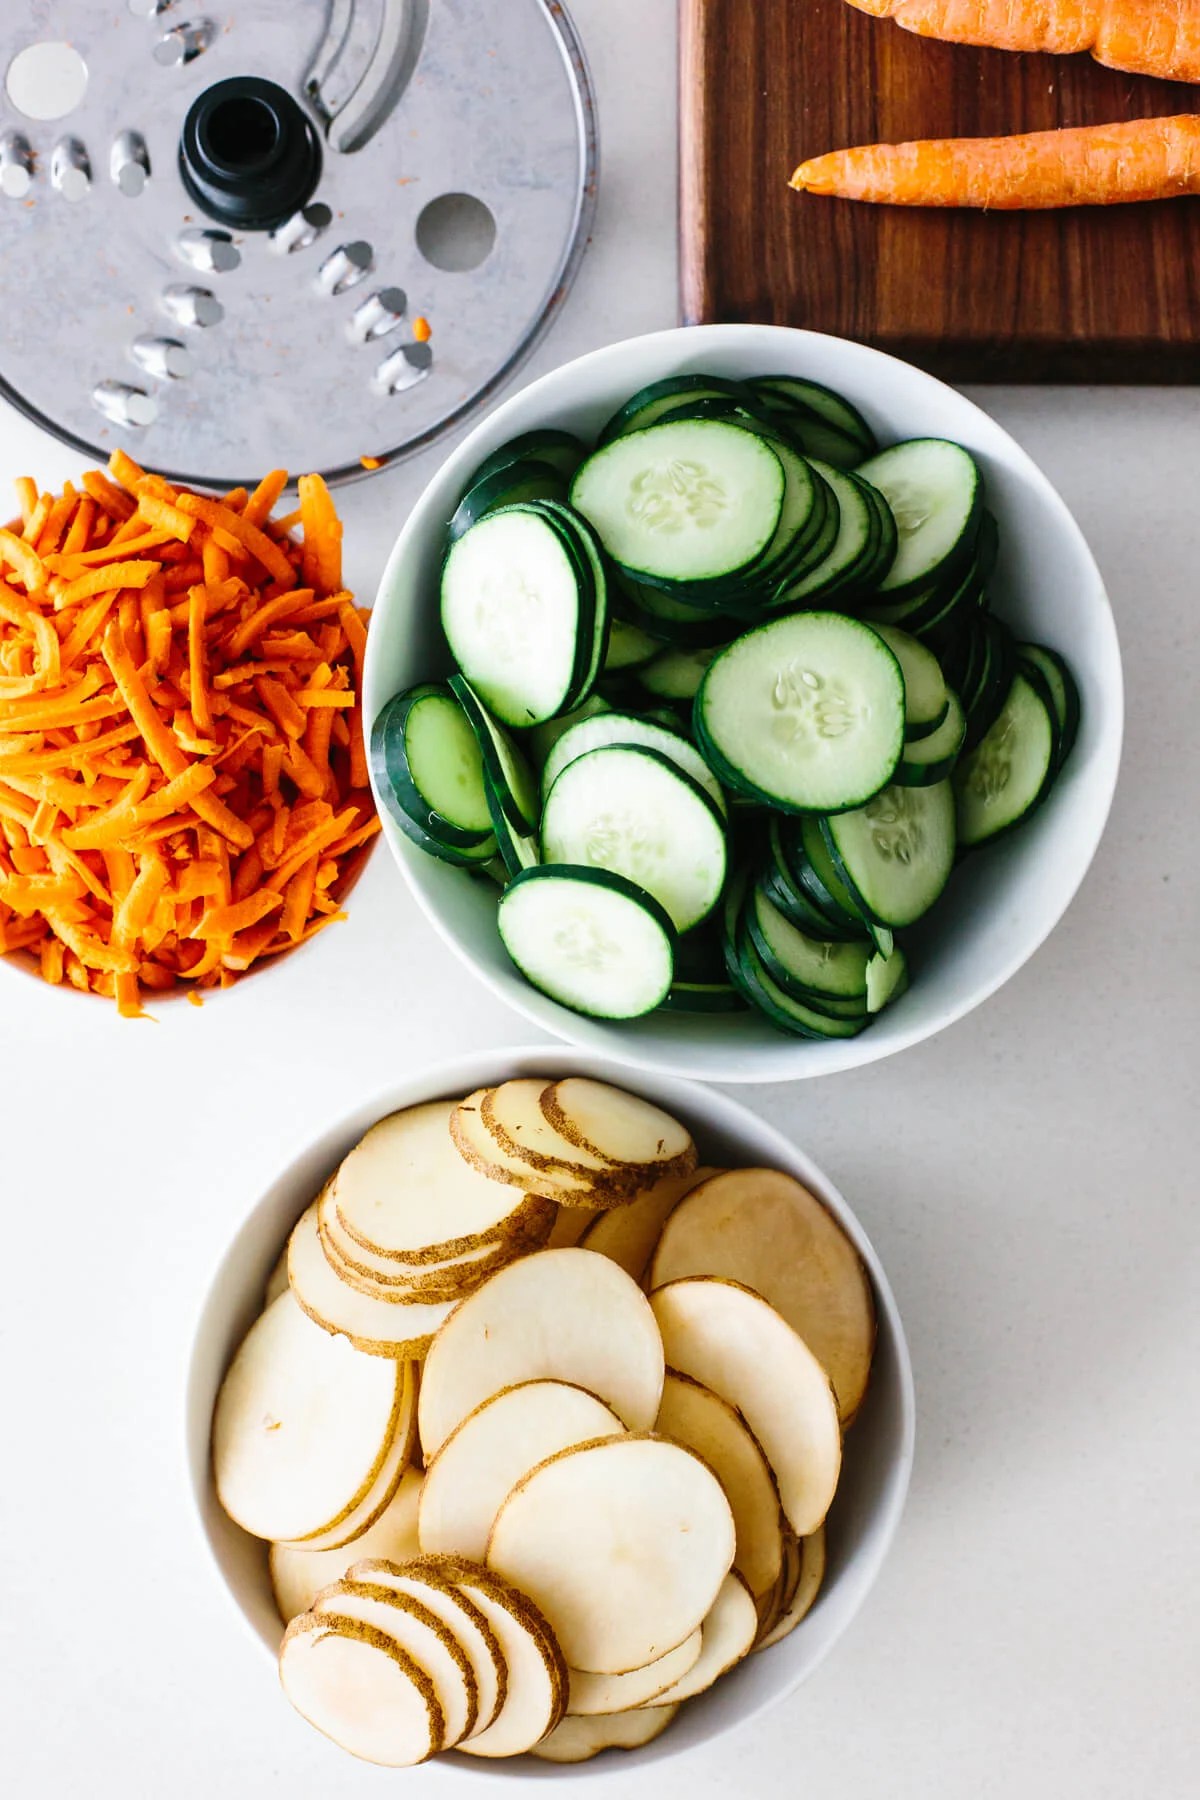 Bowls of sliced and shredded vegetables.